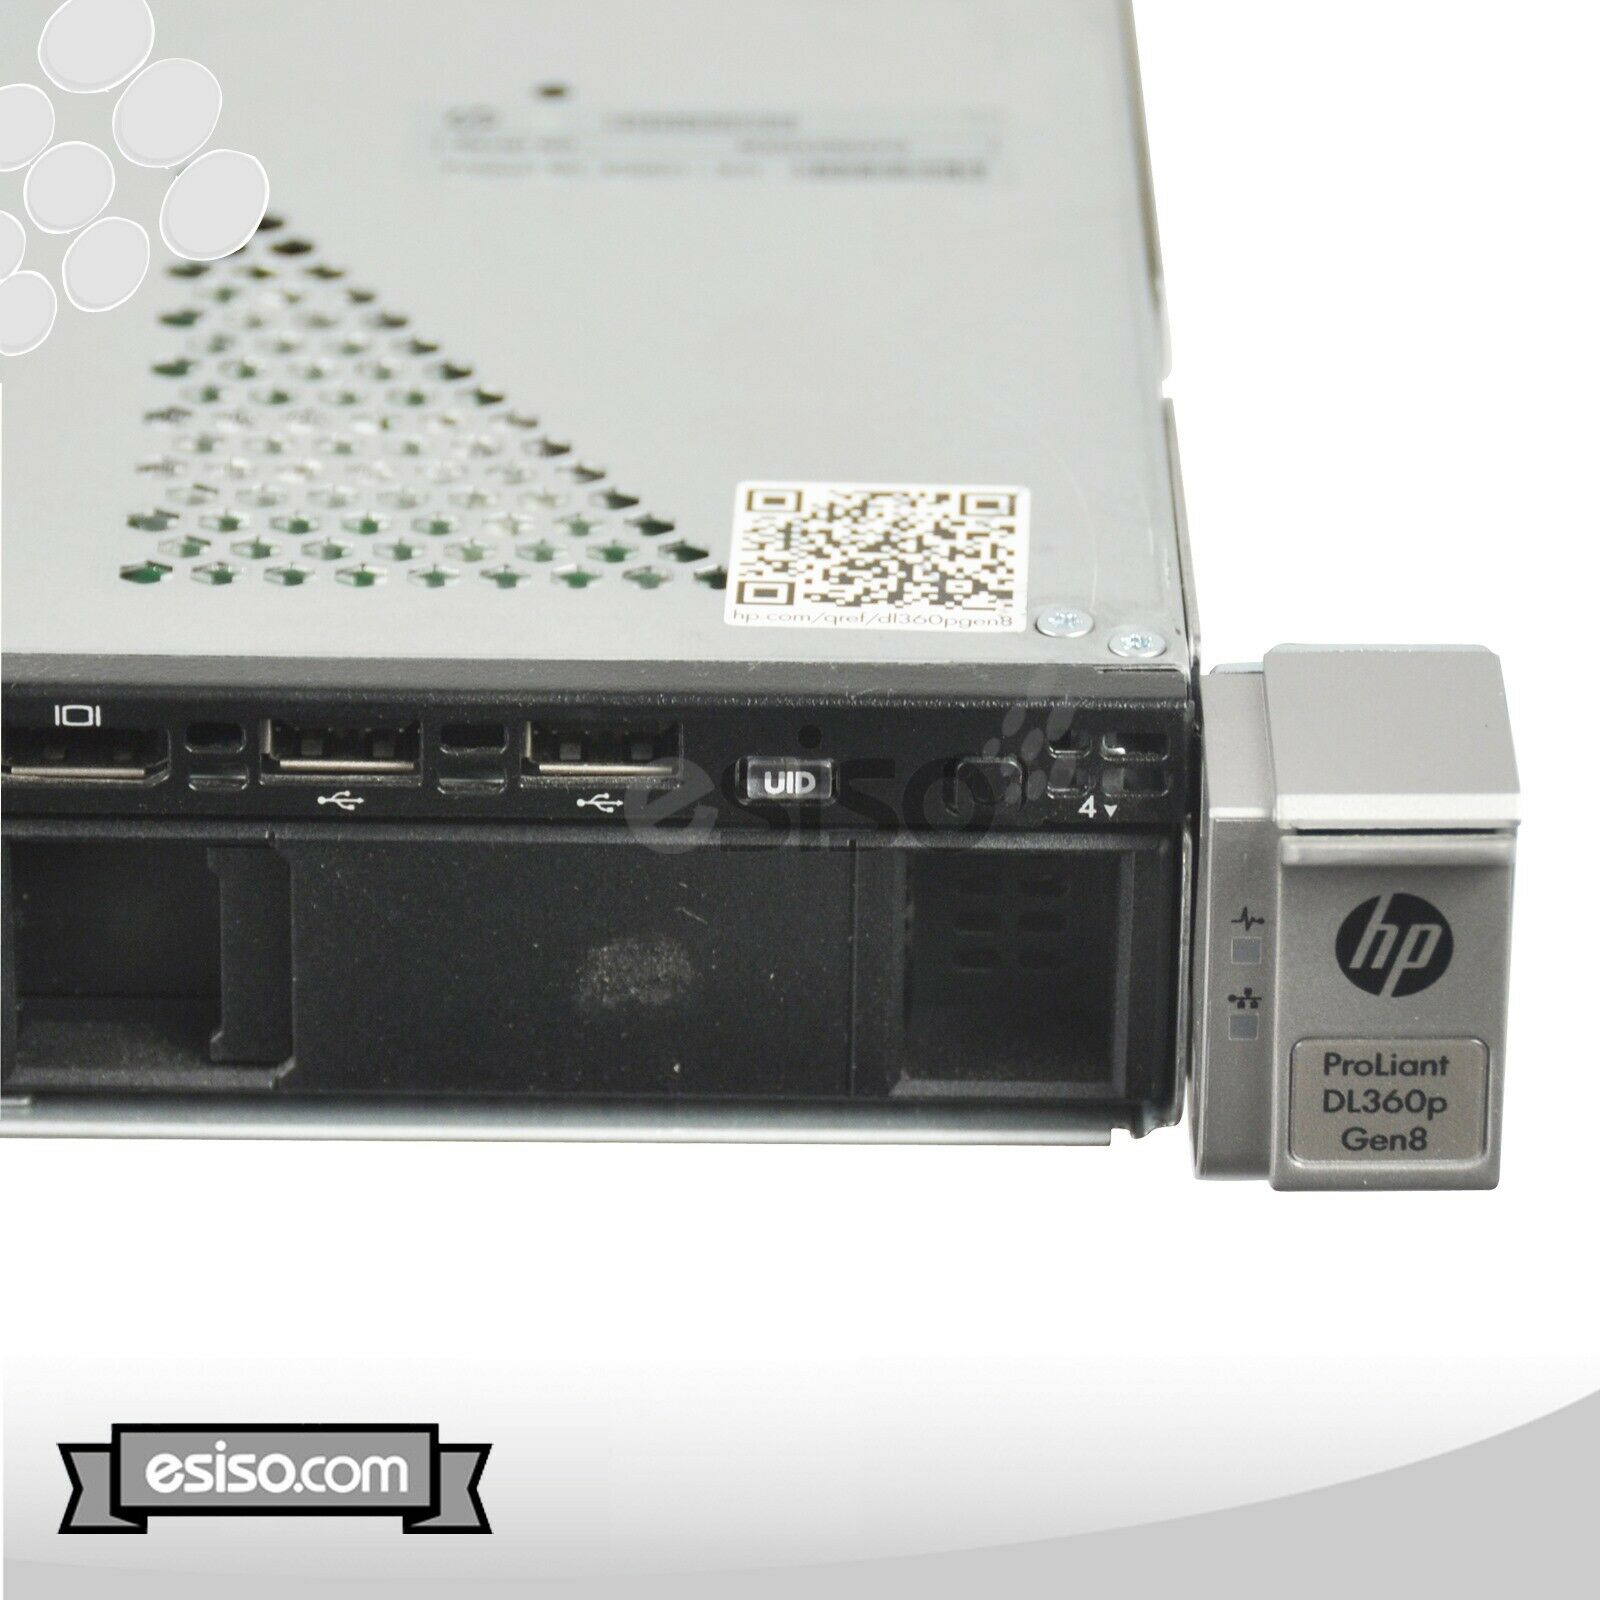 HP Proliant DL360p G8 SERVER 4LFF 2x 10C E5-2680v2 2.8GHz 16GB RAM 2x 400GB SSD